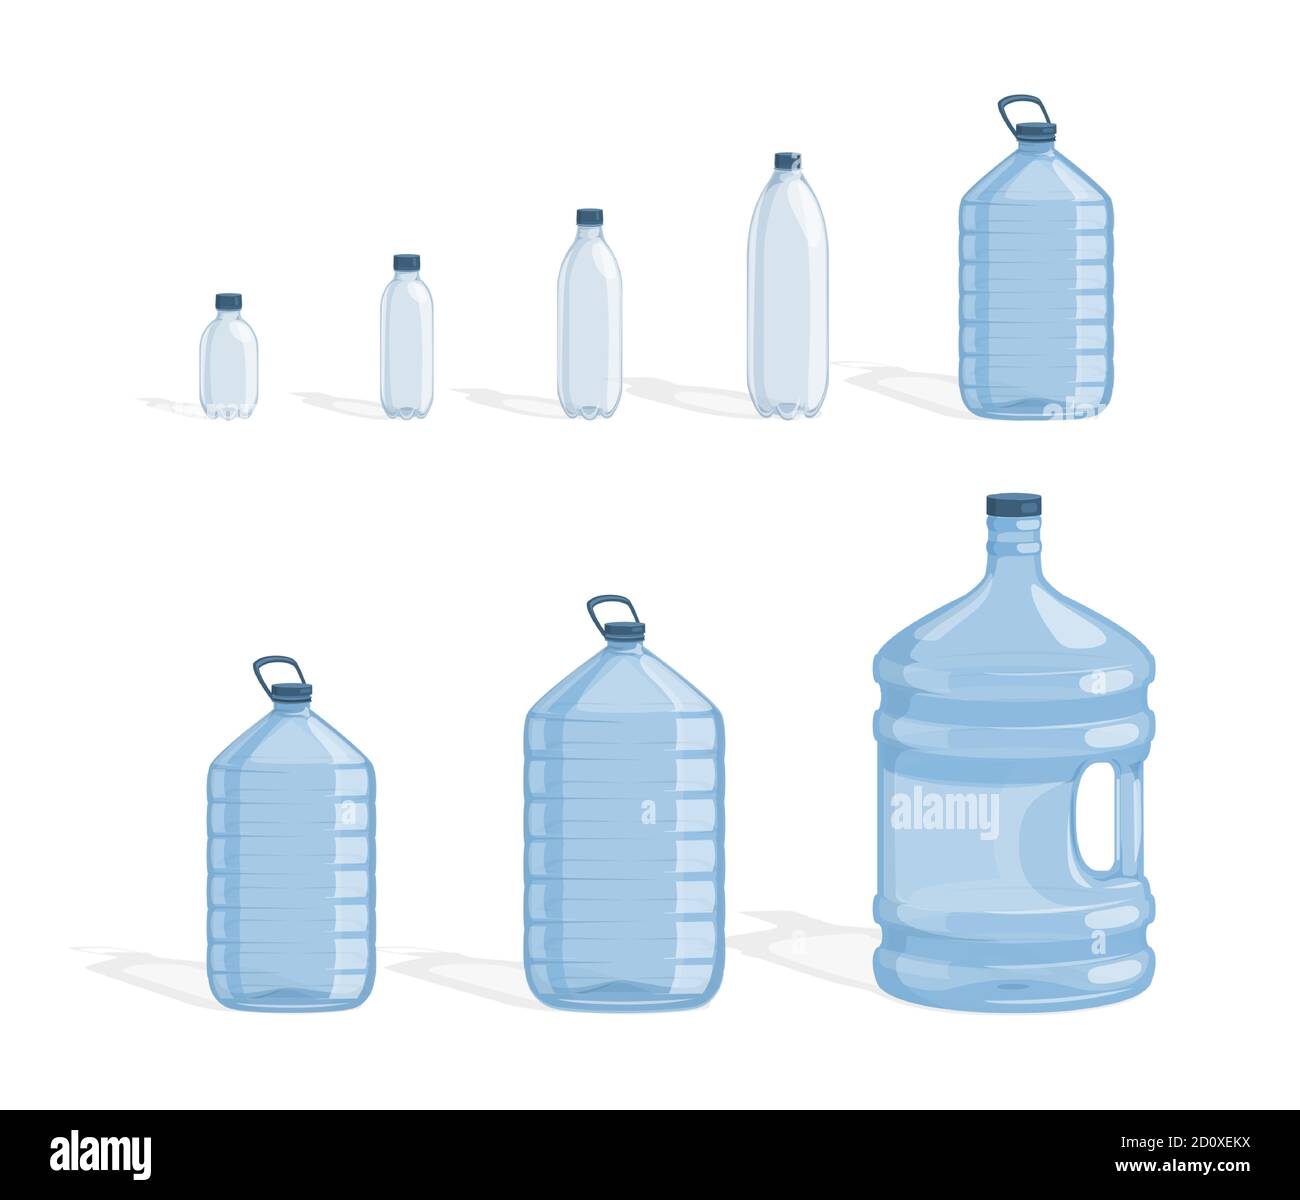 Set di flaconi in plastica per immagini piatte vettoriali di acqua pulita e fresca, isolati su sfondo bianco. Bottiglie piene di acqua per uno stile di vita attivo e sano. Elementi dei flaconi di erogazione dell'acqua. Illustrazione Vettoriale